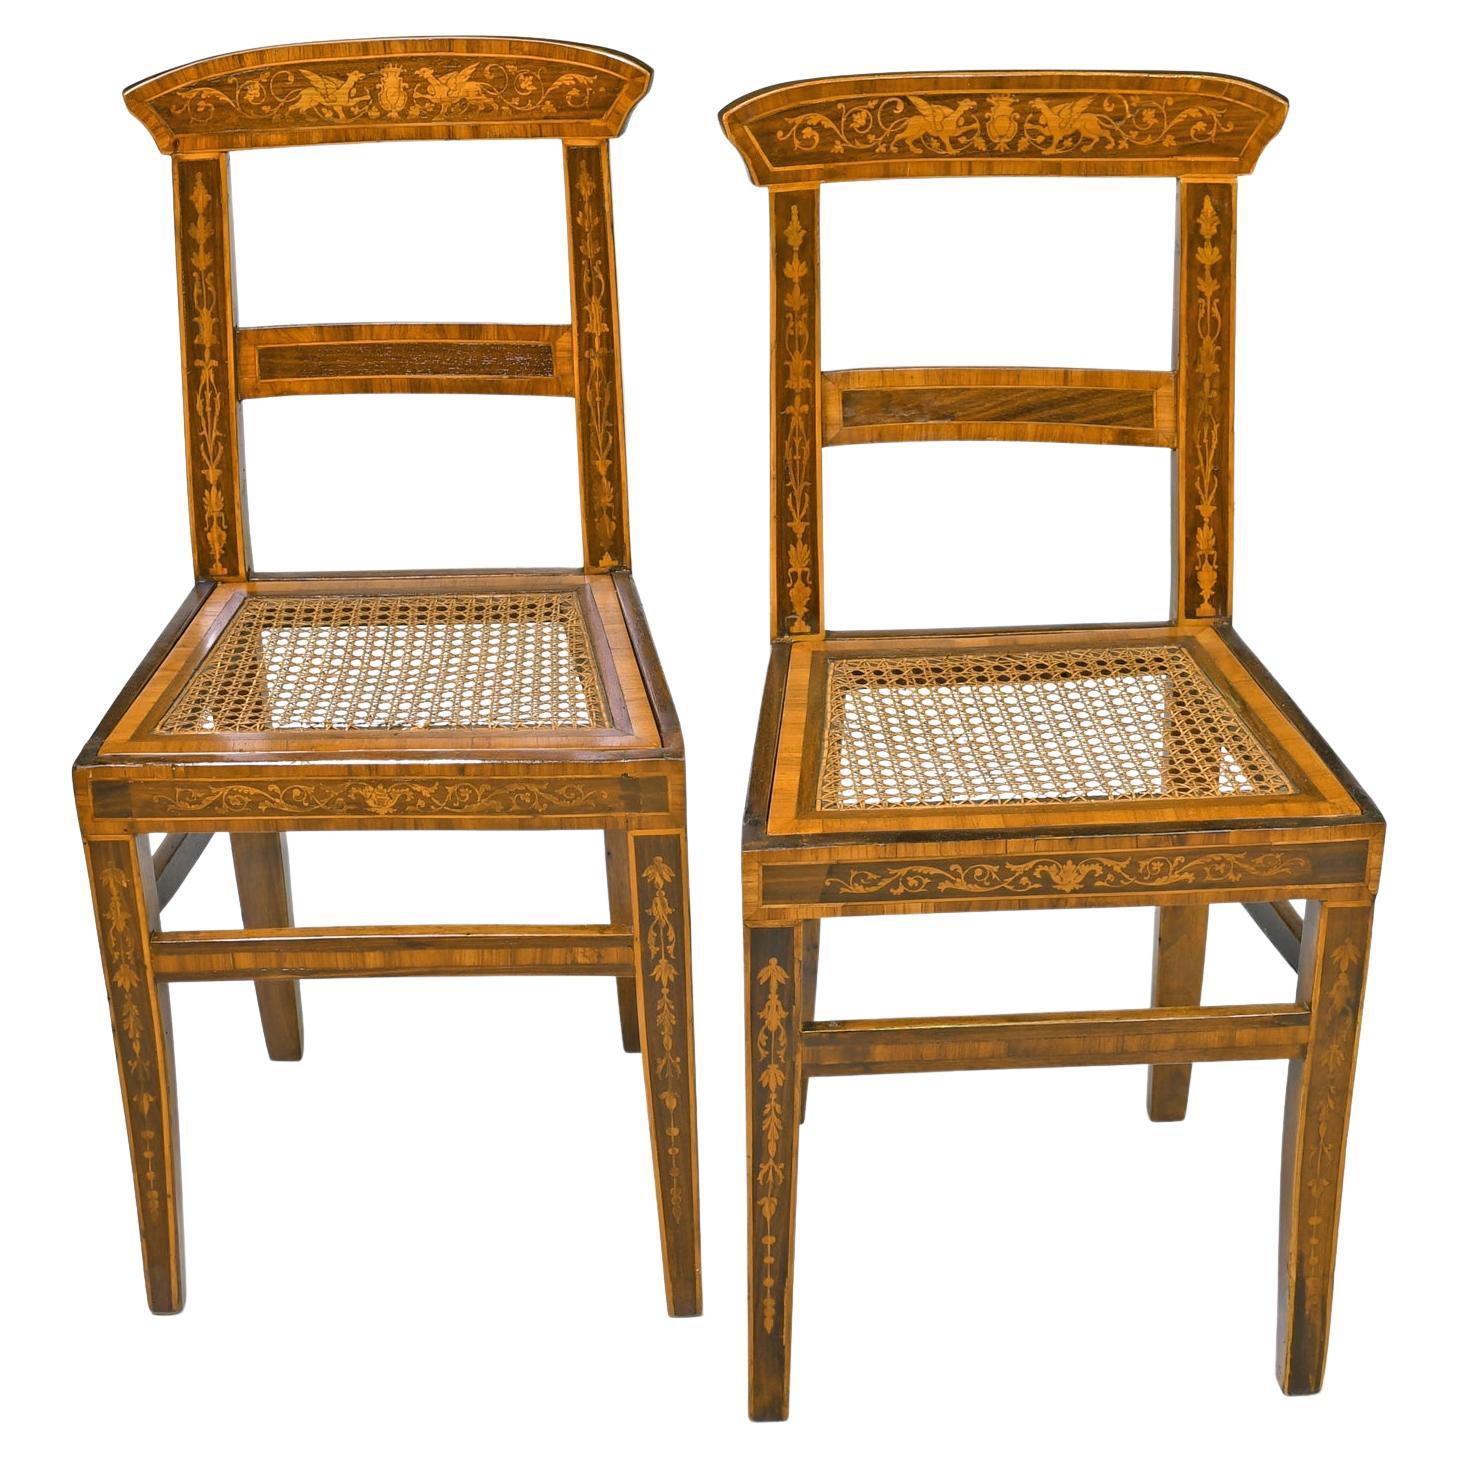 Paar antike englische Regency-Beistellstühle mit Intarsienarbeit und Sitz aus Schilfrohr